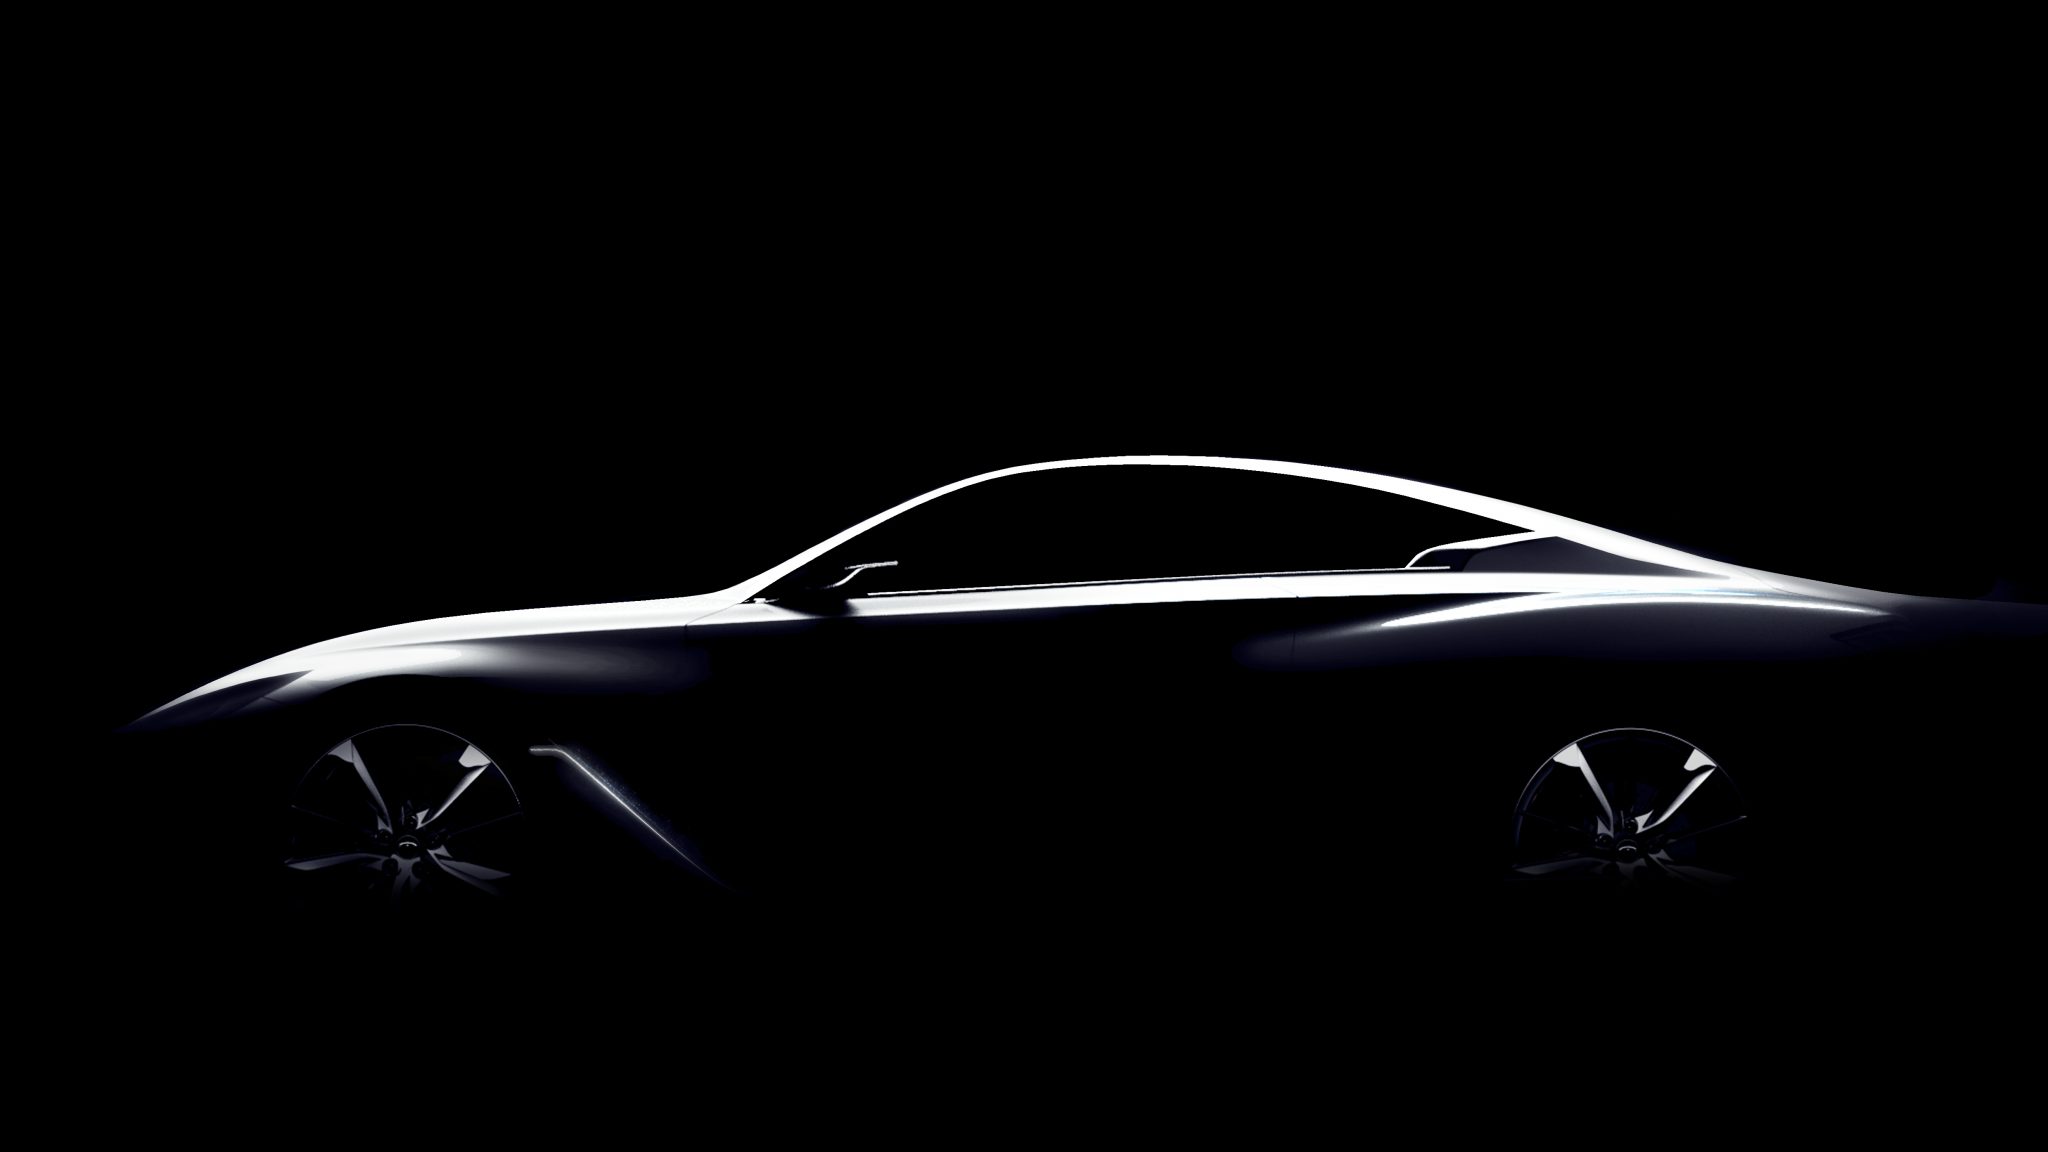 Infiniti Q60 Concept Teased for Detroit Reveal - The News Wheel